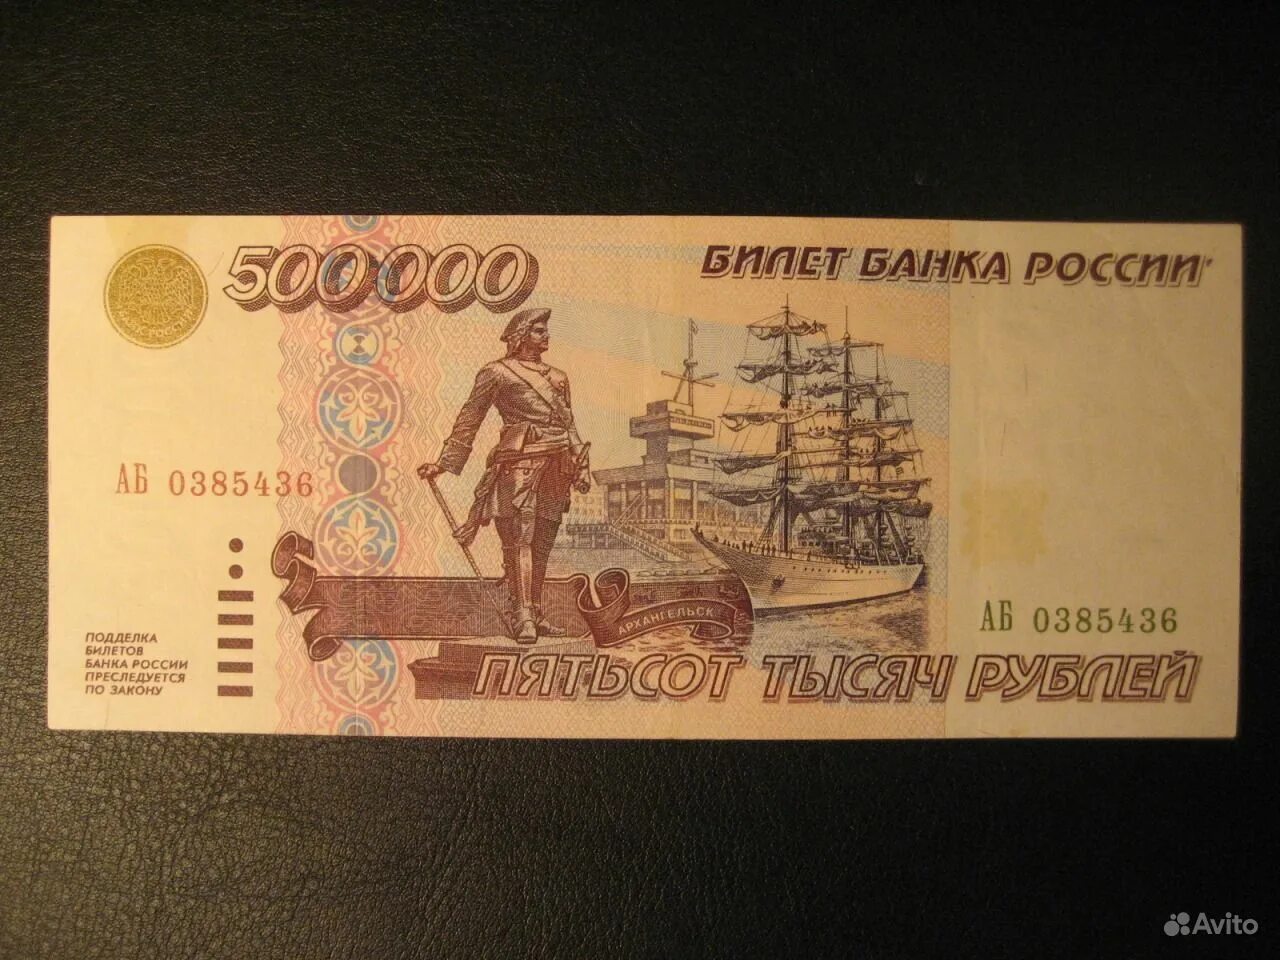 500000 в рублях. 500000 Рублей. 500000 Рублей банкнота. 500000 Рублей 1995. Купюра 500000 рублей.